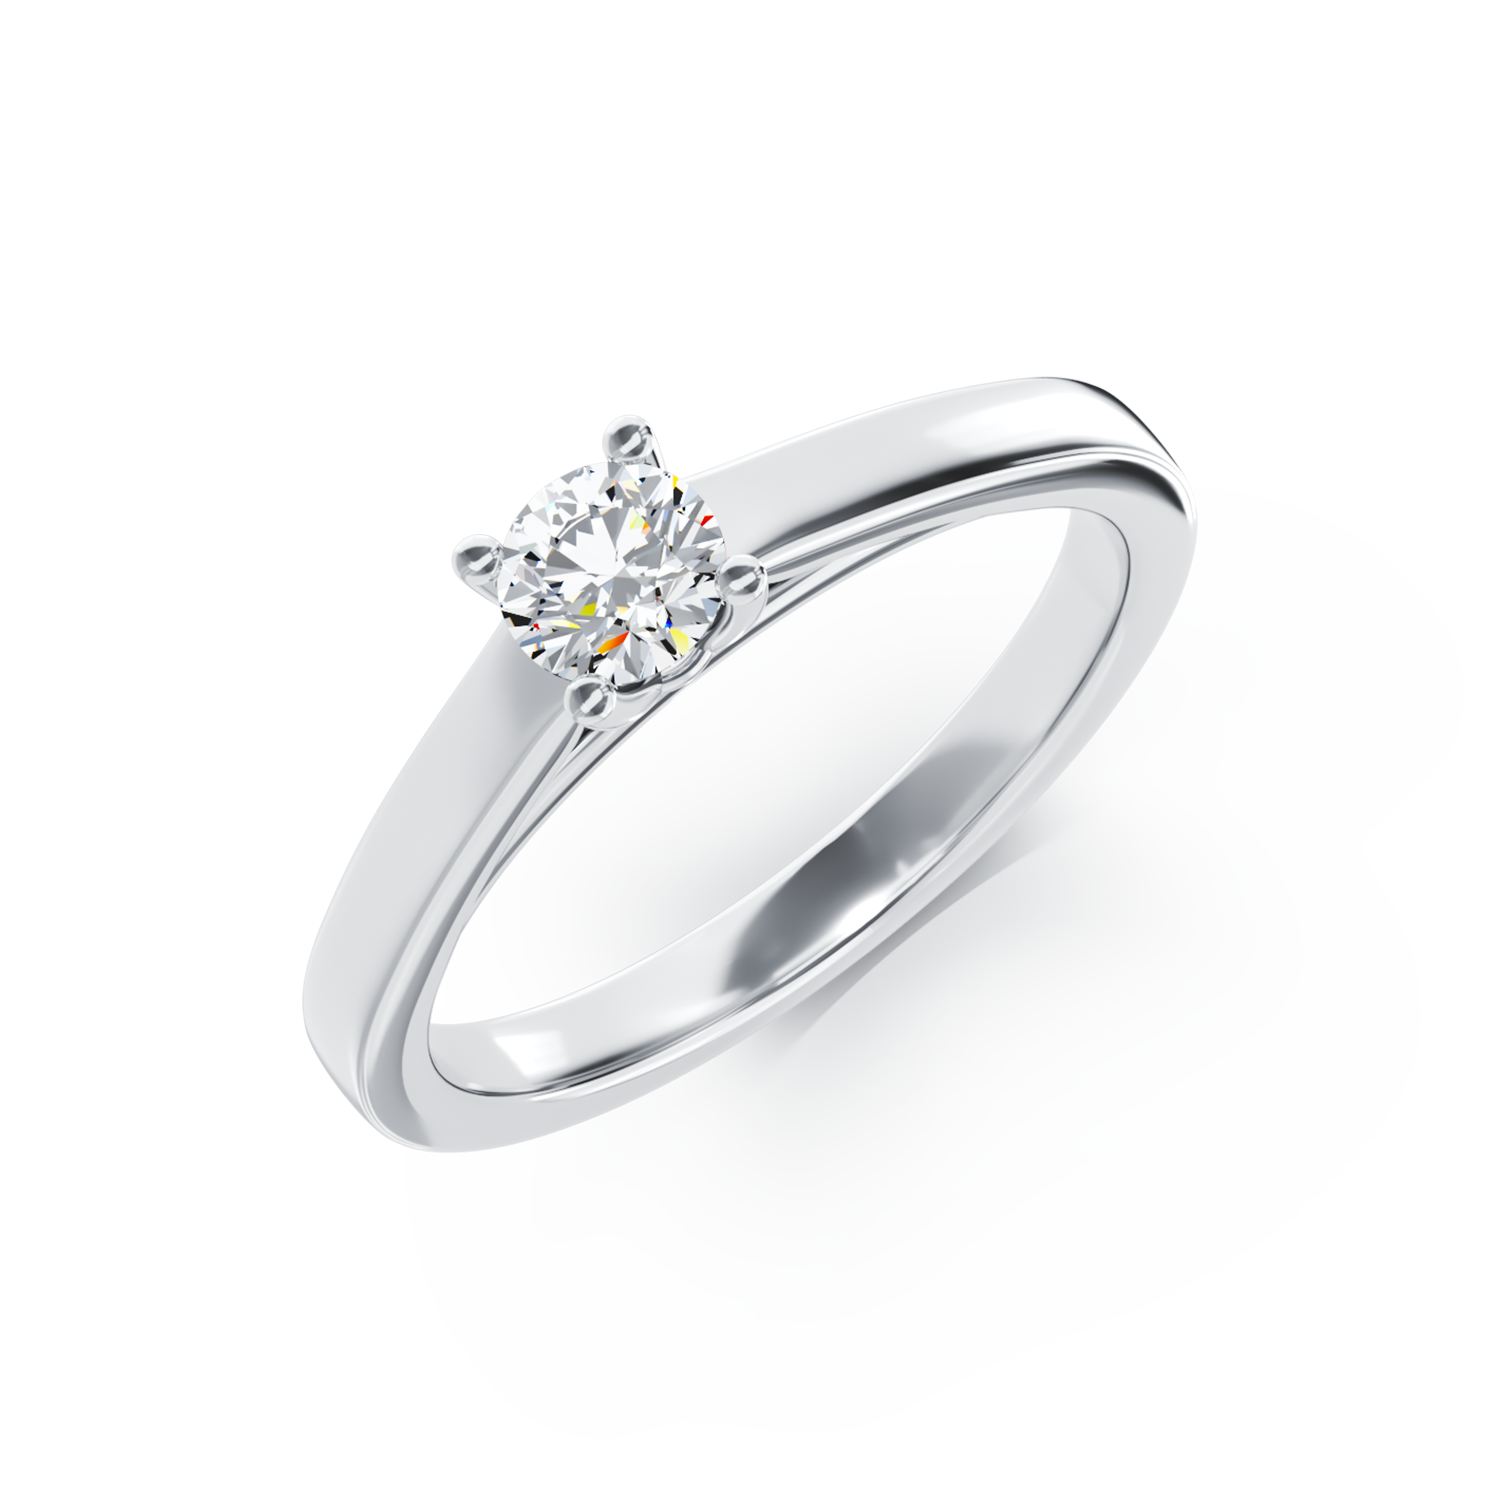 Poze Inel de logodna din aur alb de 18K cu un diamant solitaire de 0.24ct